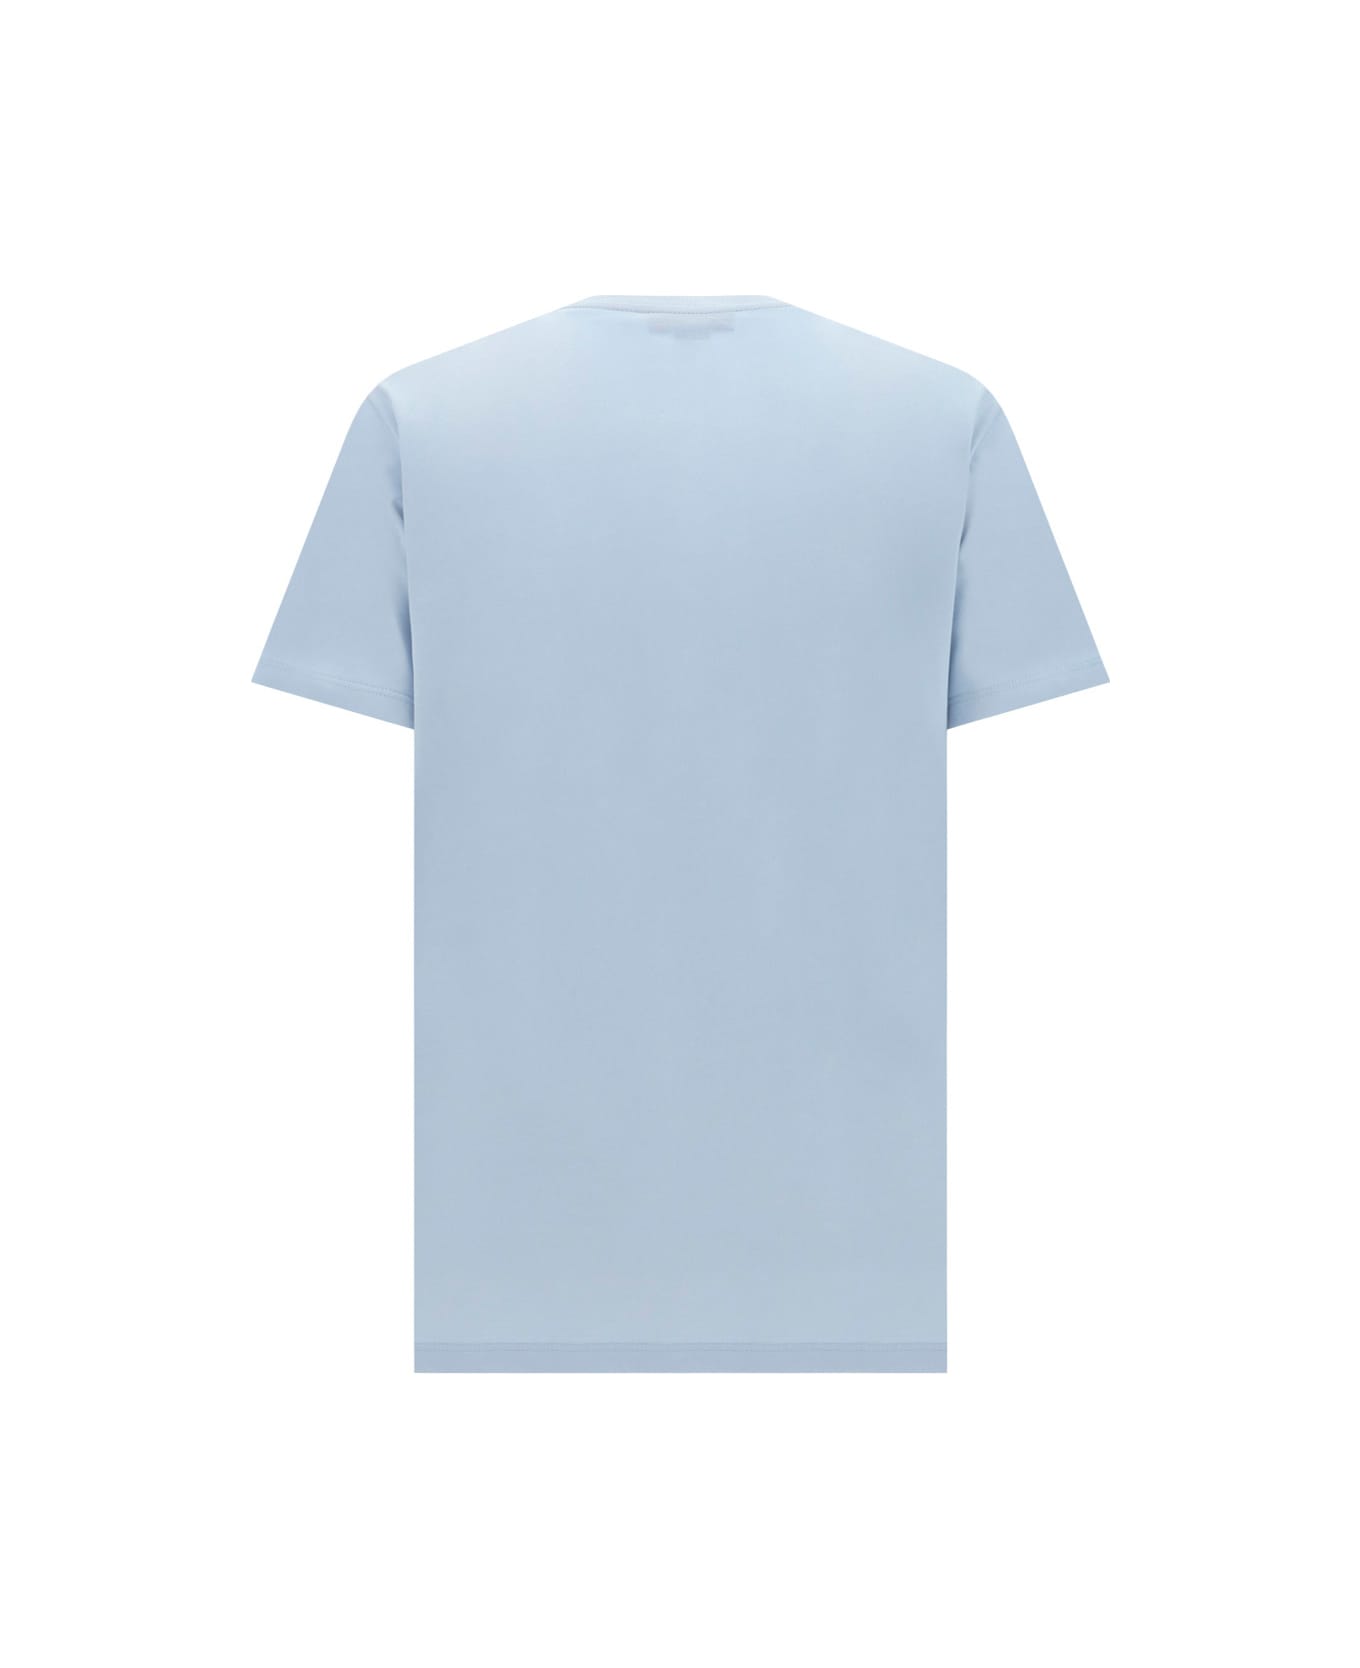 Alexander McQueen Light Blue Mcqueen Graffiti T-shirt - Light blue Tシャツ